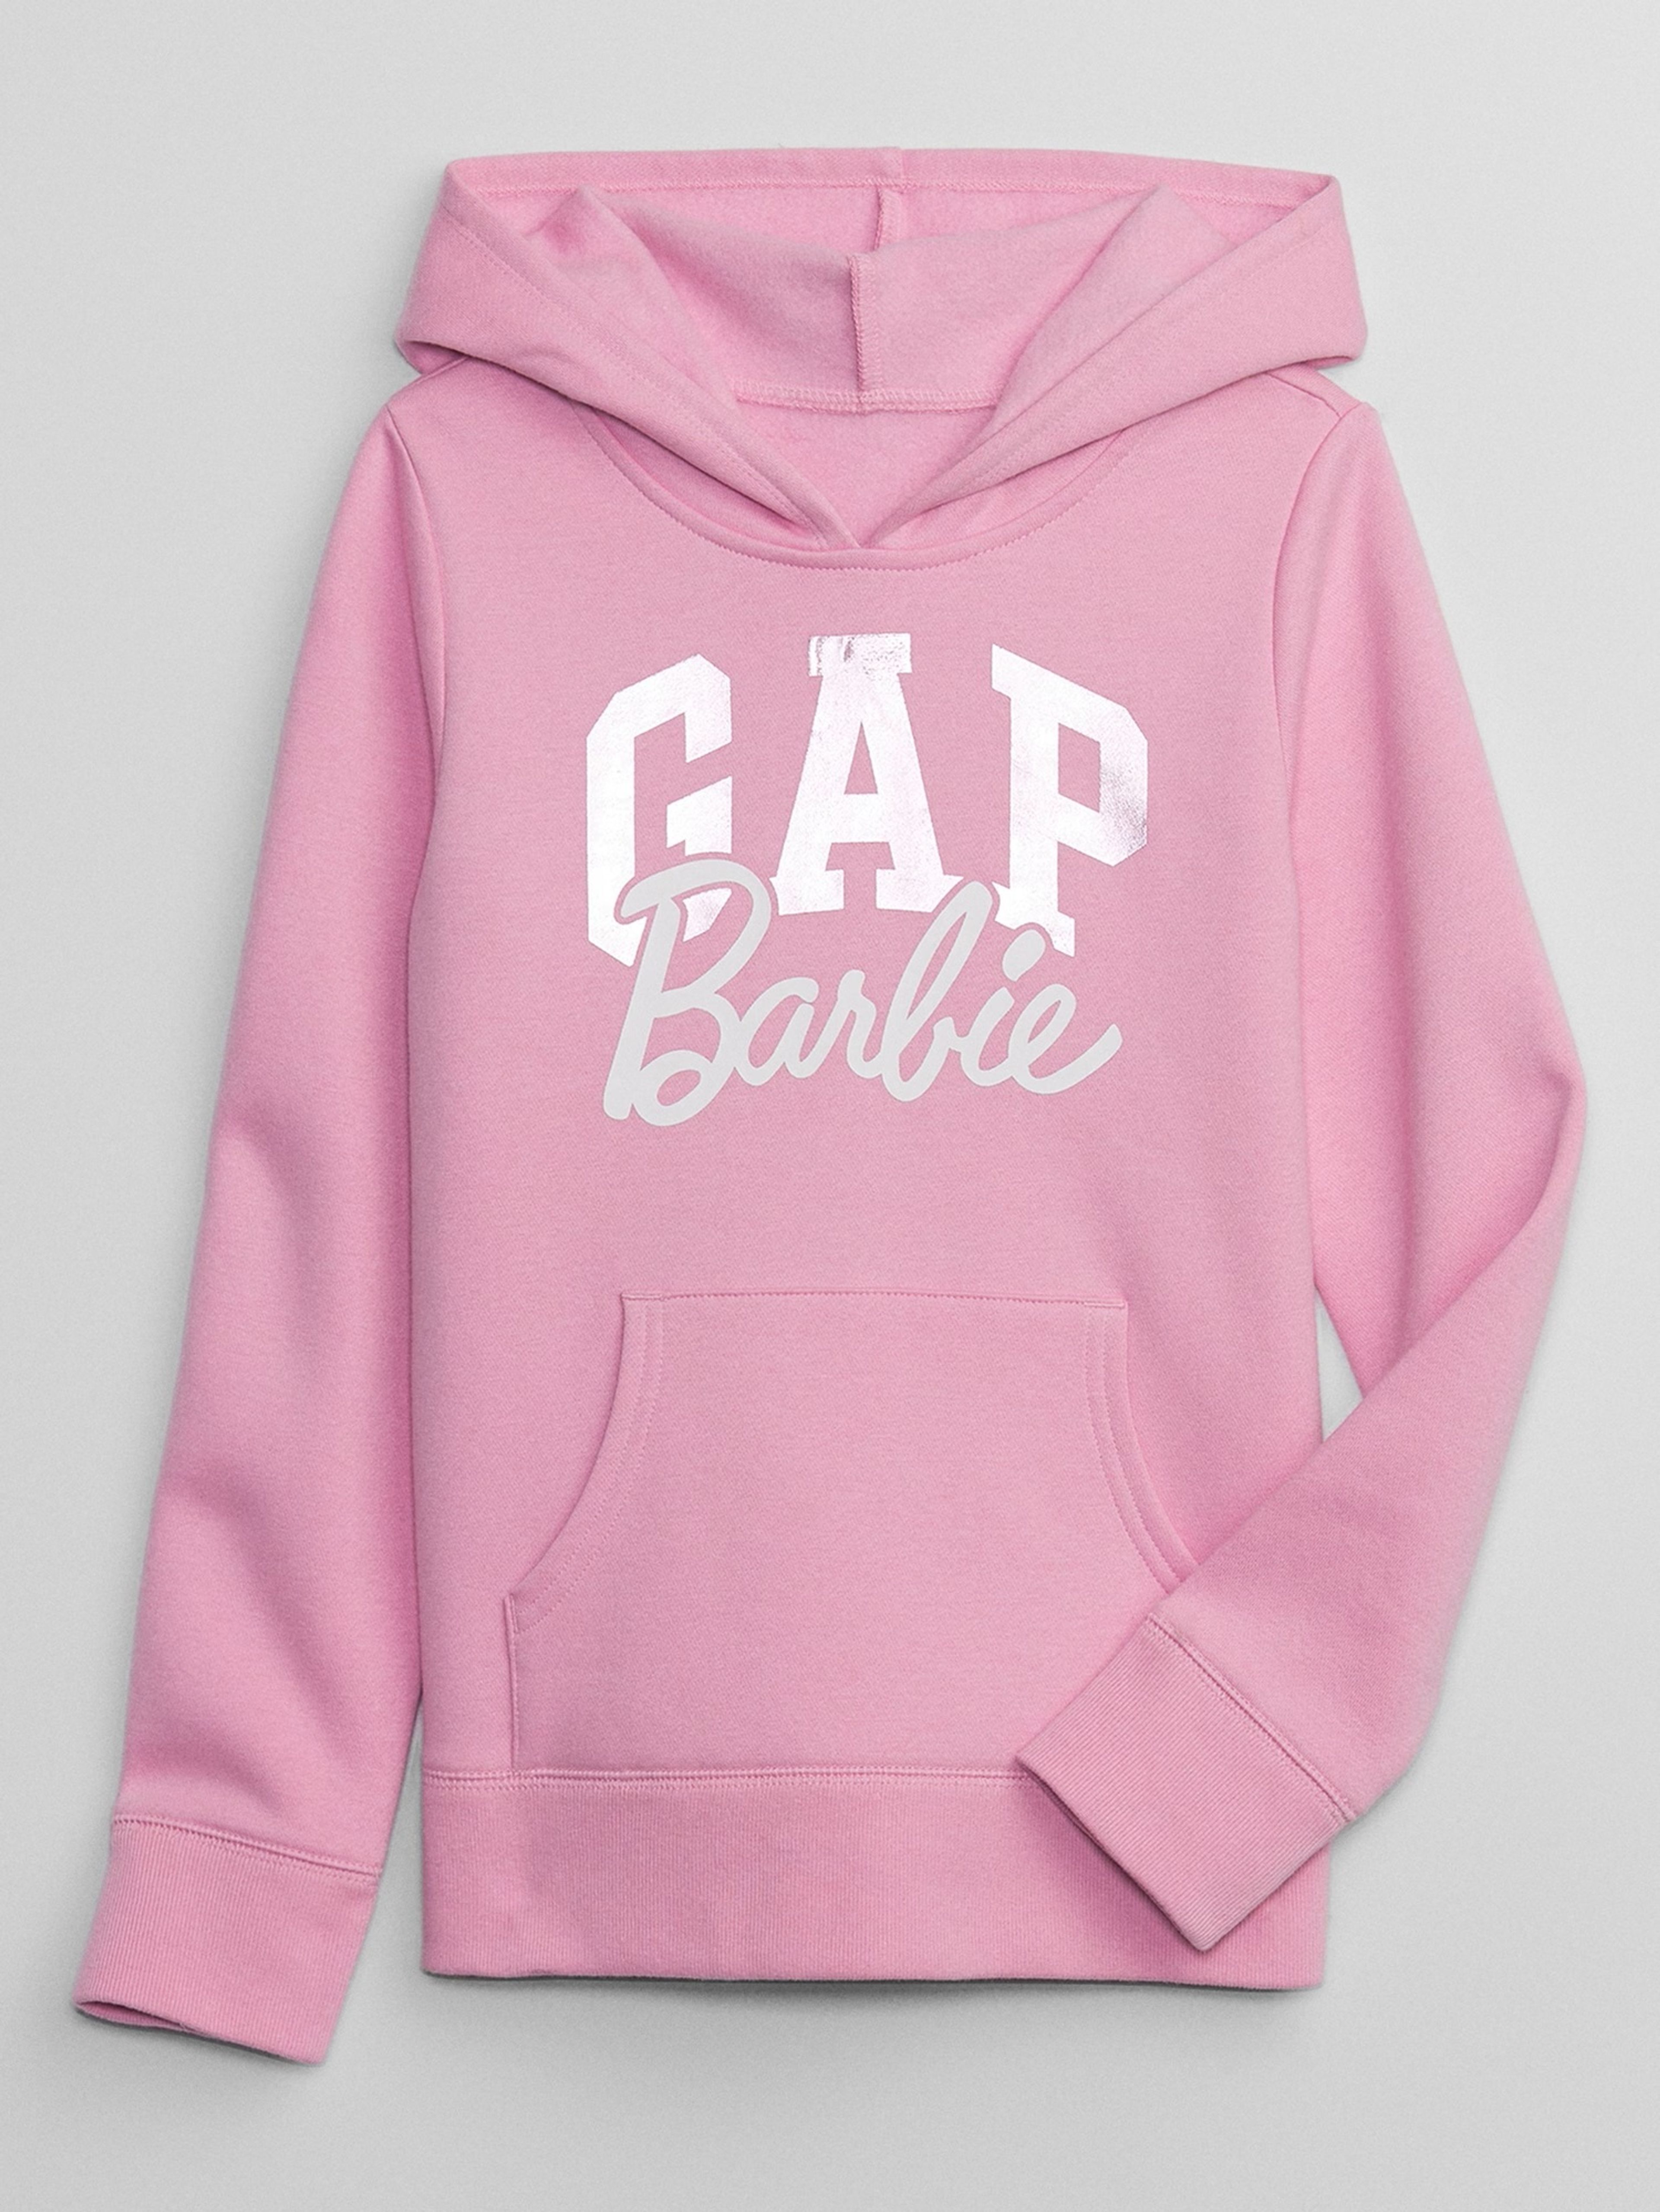 Kinder Sweatshirt GAP & Barbie™